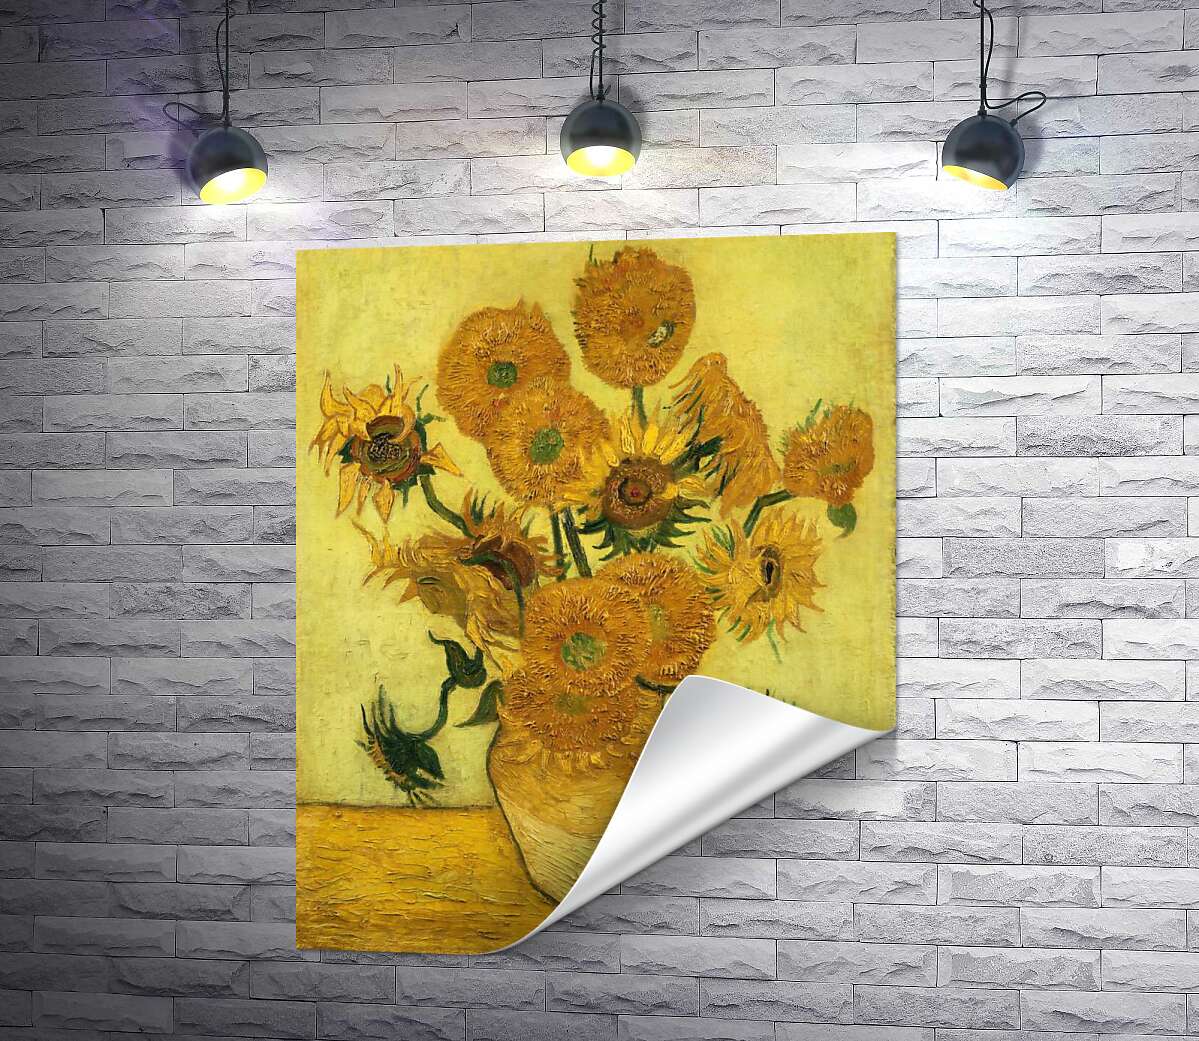 друк Соняшники (Sunflowers) - Вінсент ван Гог (Vincent van Gogh)